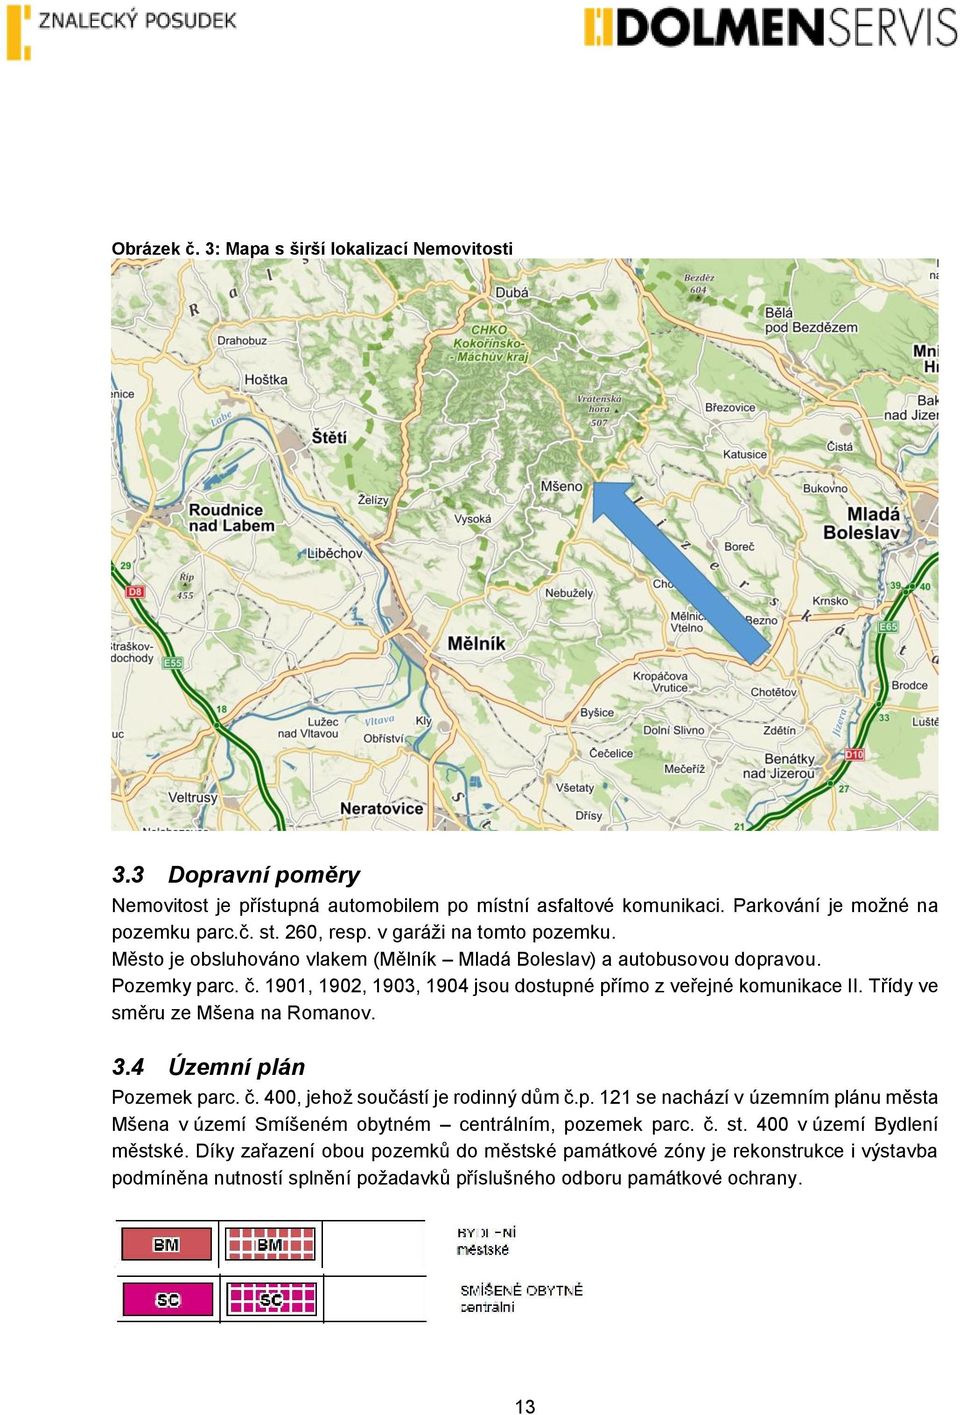 Třídy ve směru ze Mšena na Romanov. 3.4 Územní plán Pozemek parc. č. 400, jehož součástí je rodinný dům č.p. 121 se nachází v územním plánu města Mšena v území Smíšeném obytném centrálním, pozemek parc.